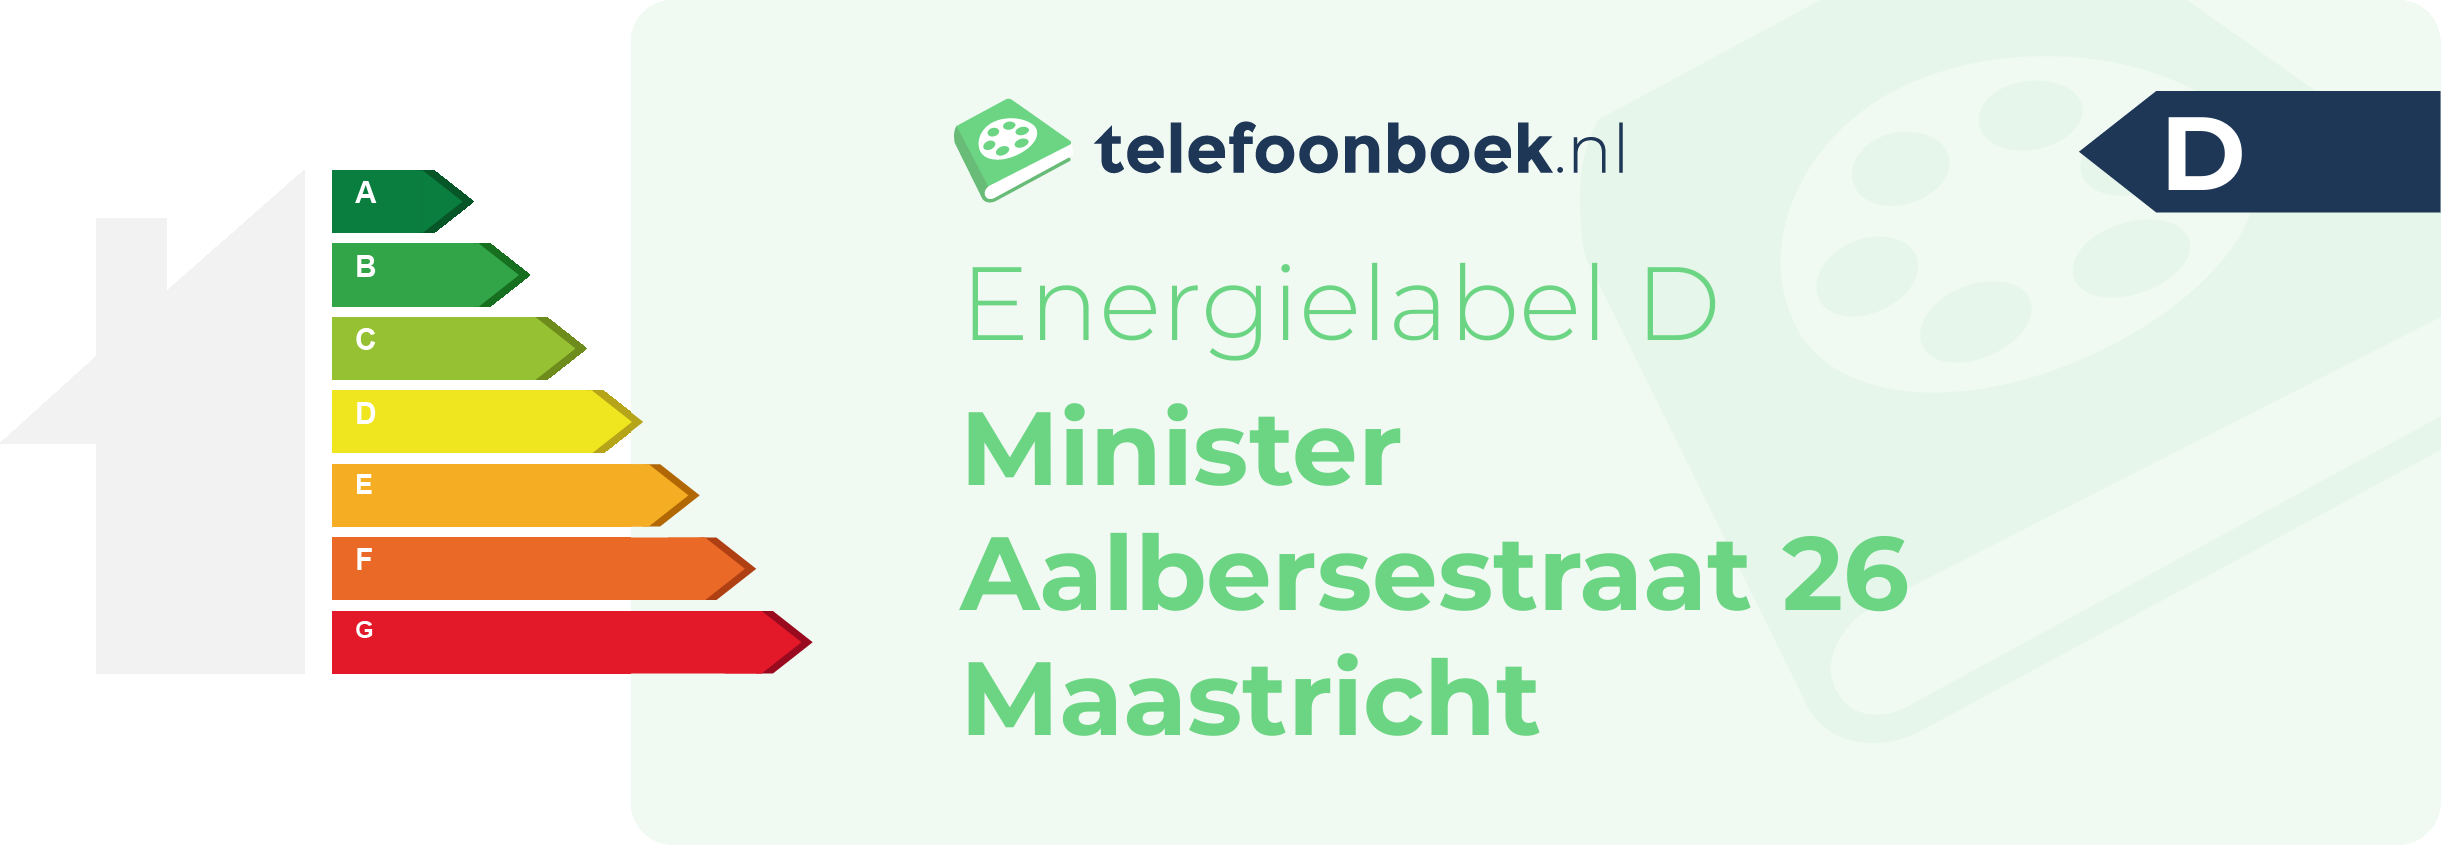 Energielabel Minister Aalbersestraat 26 Maastricht